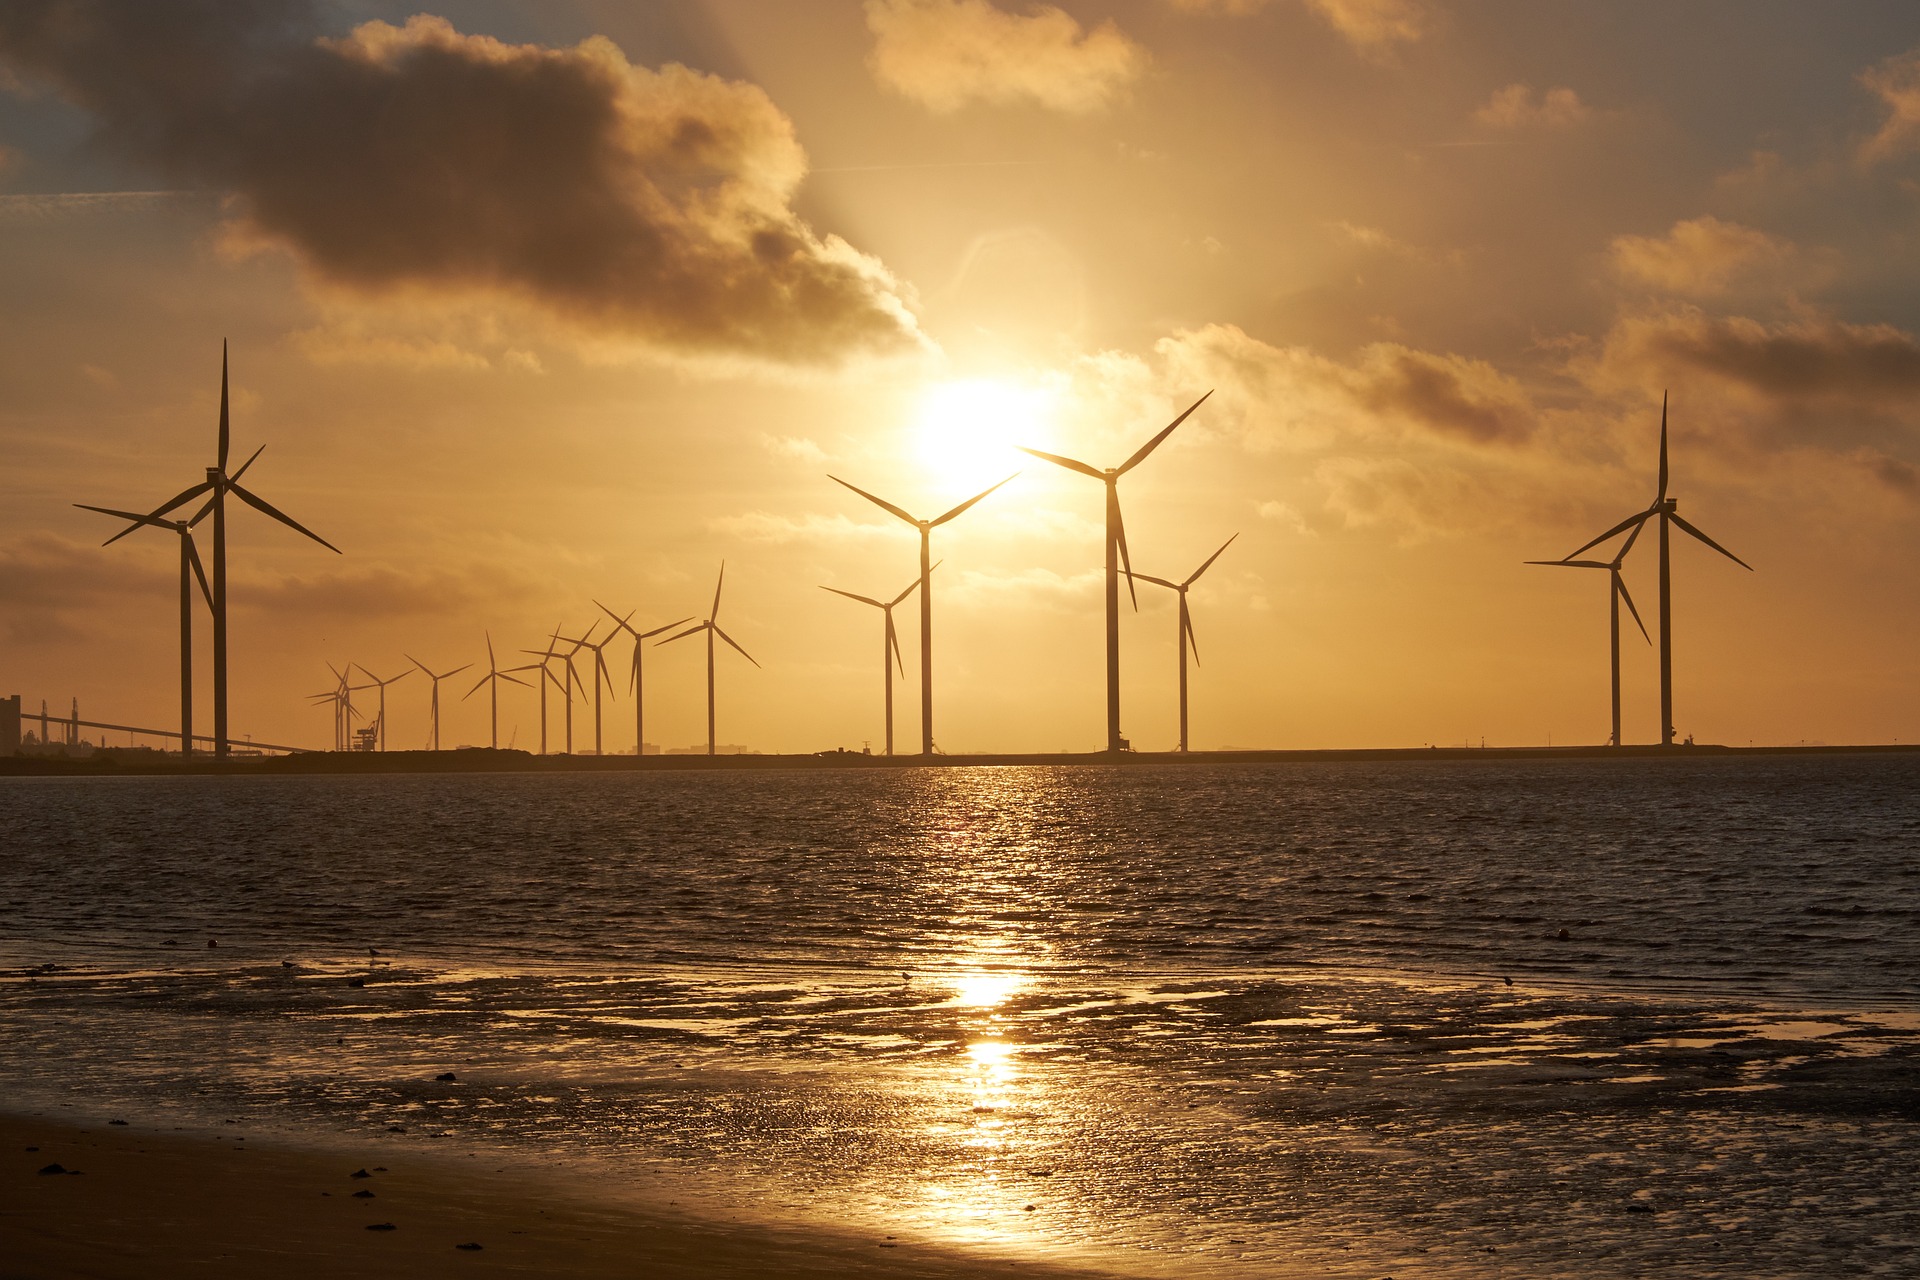 Portugal abre primeira etapa para empresas interessadas no leilão de energia eólica offshore. Na imagem: Turbinas eólicas em parque offshore com sol se pondo e refletindo na água na orla (Foto: Bru-nO/Pixabay)